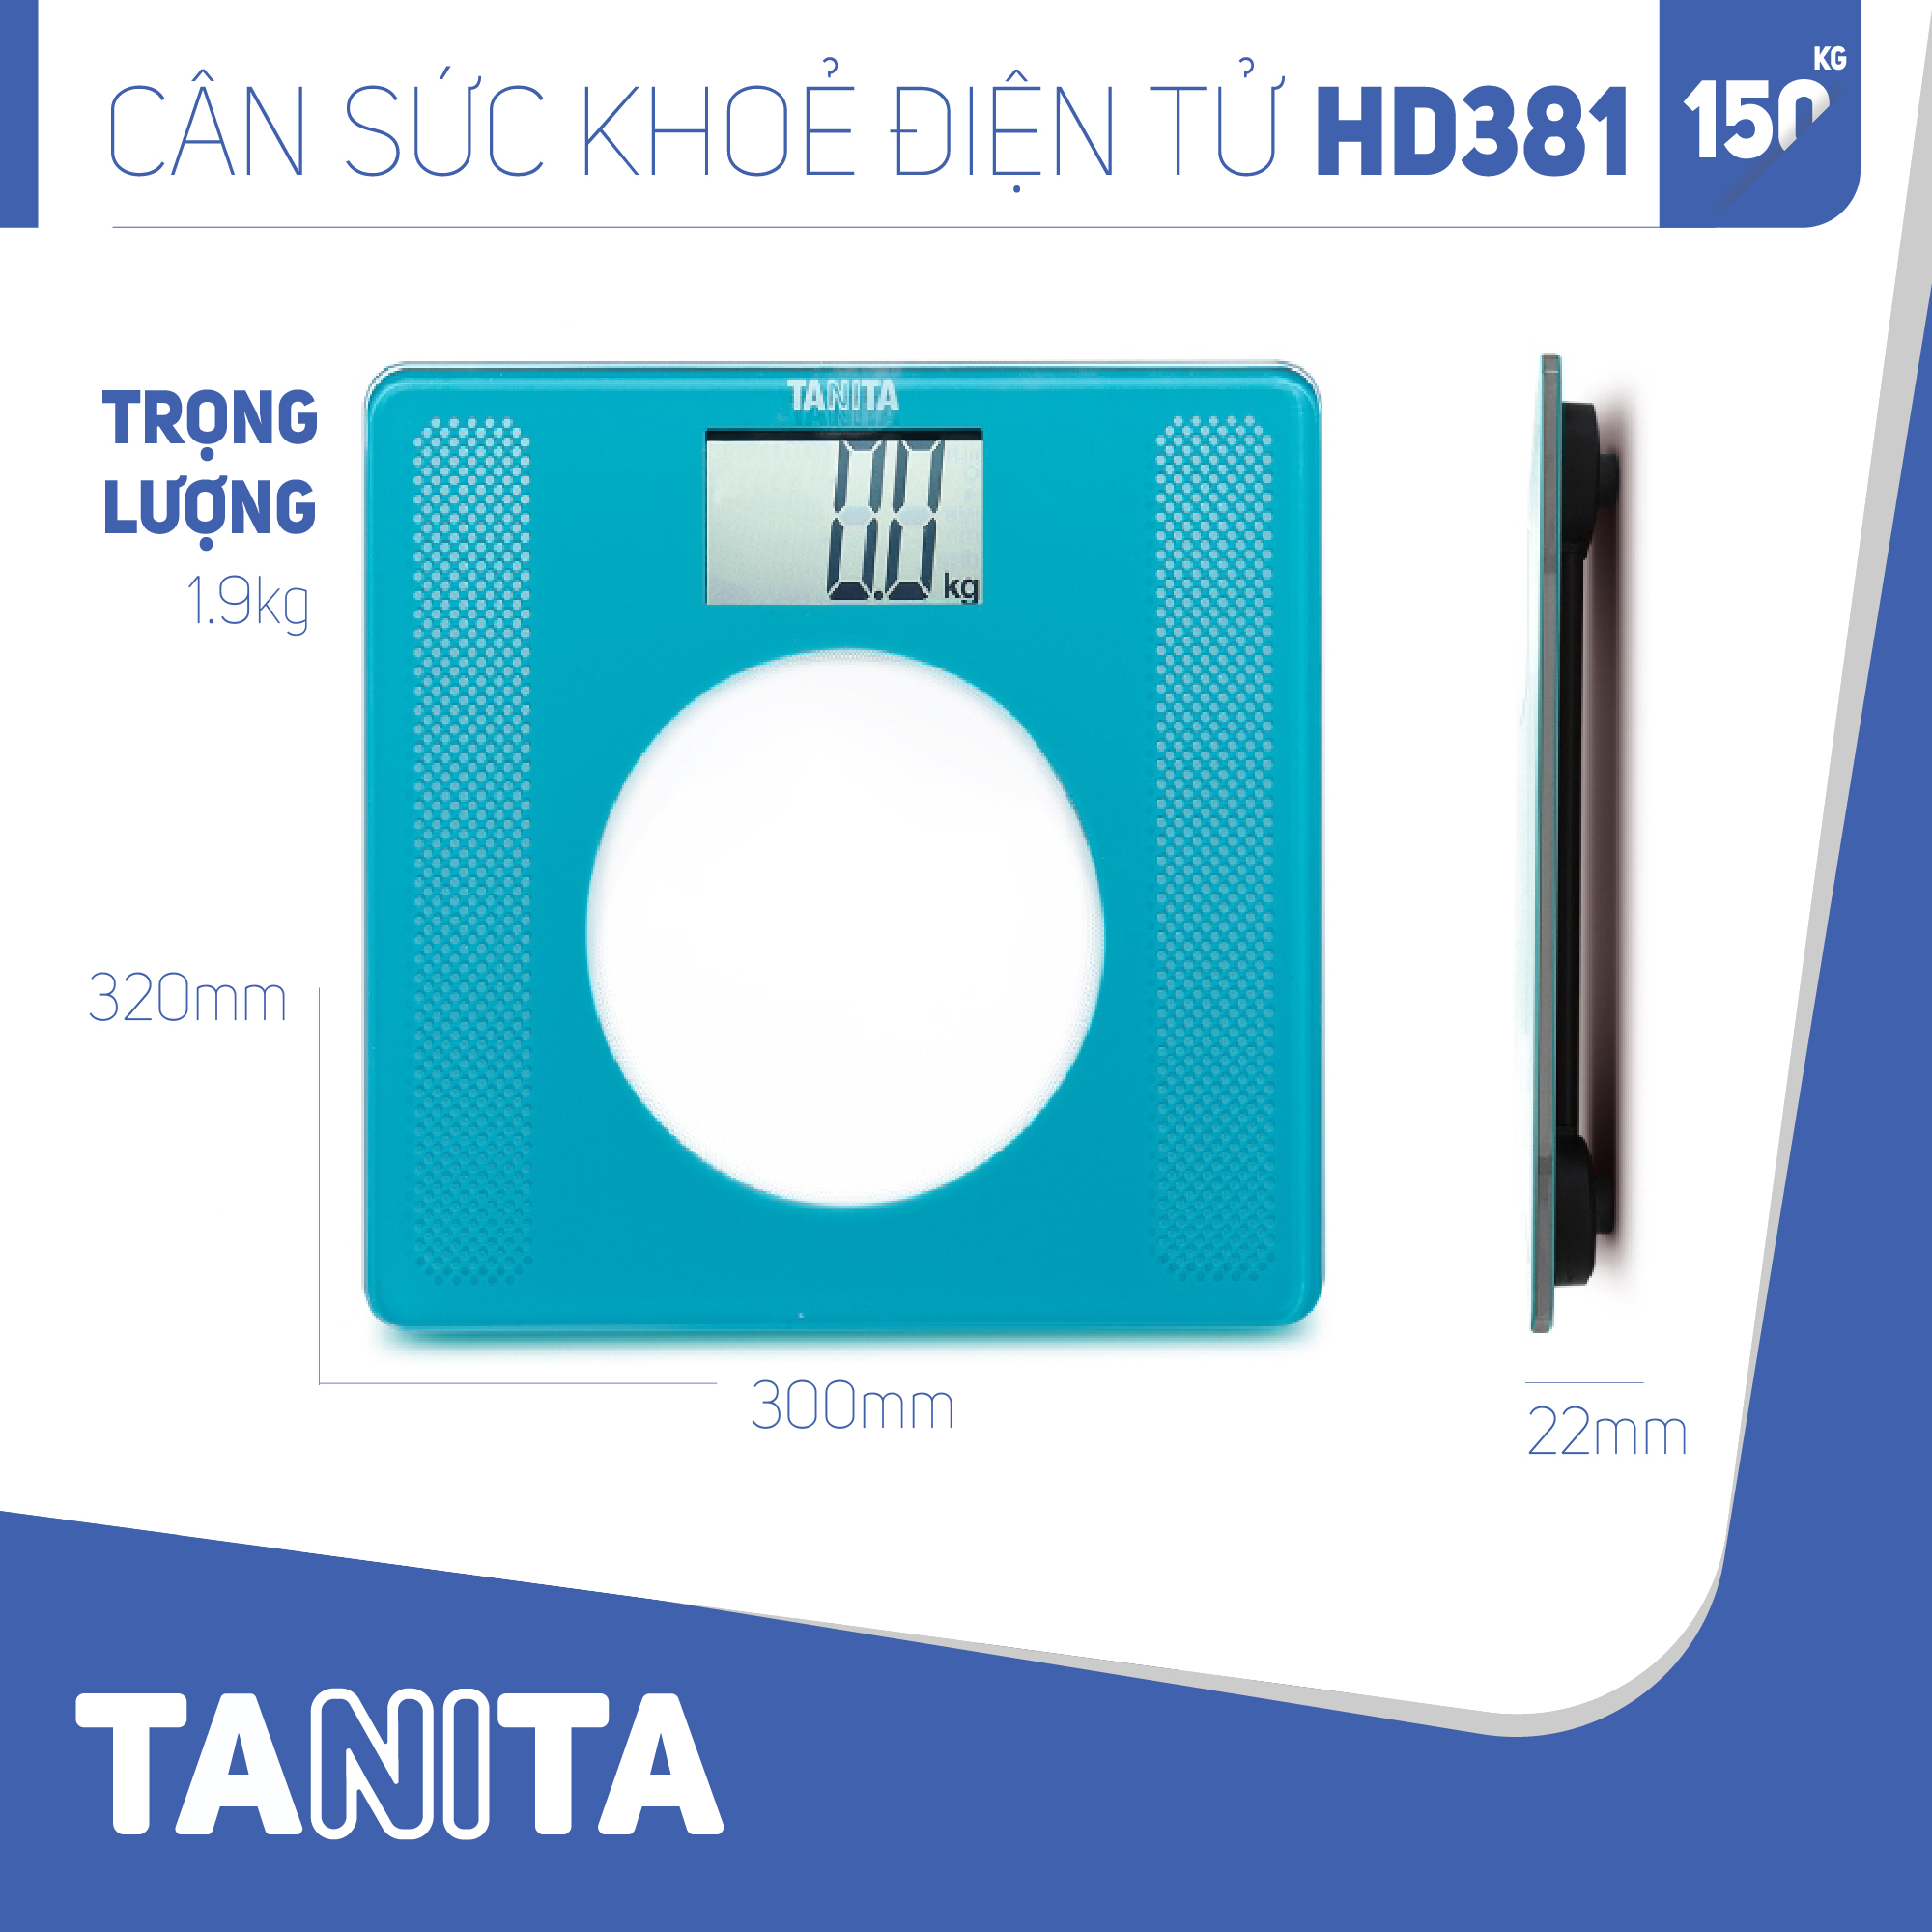 Cân sức khoẻ điện tử Tanita HD381 Nhật Bản, Cân tanita, chính hãng nhật bản,cân điện tử,cân chính hãng,cân nhật bản, cân sức khoẻ y tế, cân sức khoẻ gia đình, cân sức khoẻ cao cấp,cân 120kg,cân 130kg,cân 150kg,Cân sức khoẻ mini